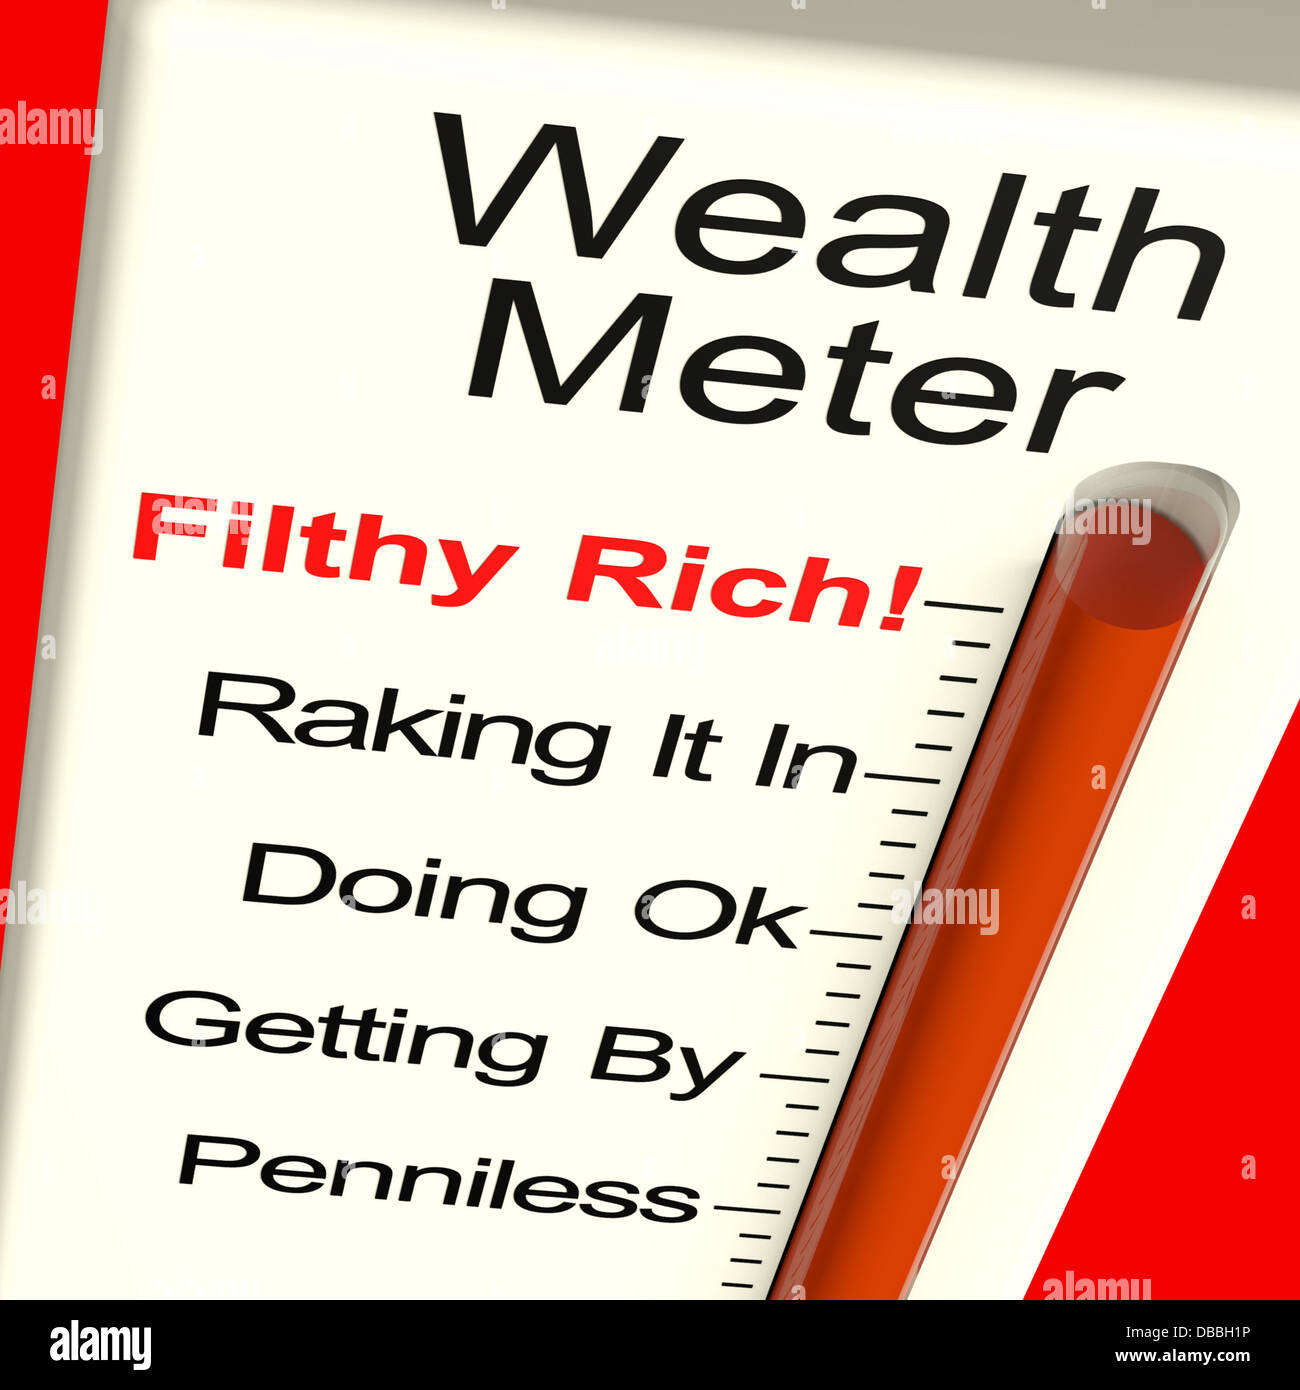 Image result for wealth meter